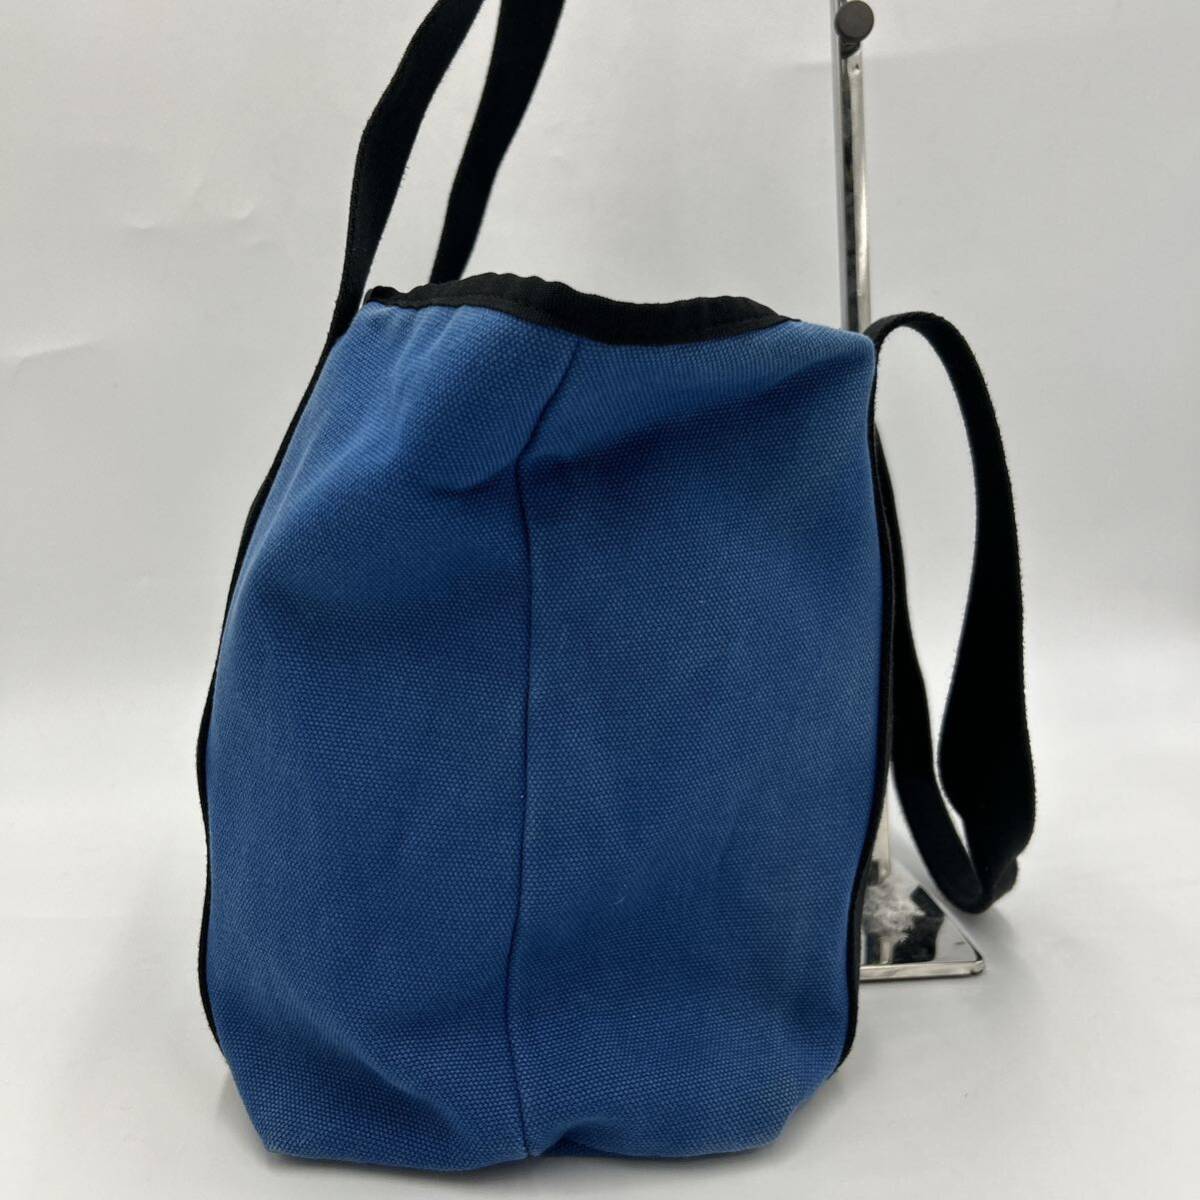 C @ 高級感溢れる '人気モデル' OROBIANCO オロビアンコ 高品質 キャンバス地 トートバッグ 手提げ 肩掛け鞄 ハンドバッグ 婦人鞄 BLUE の画像4